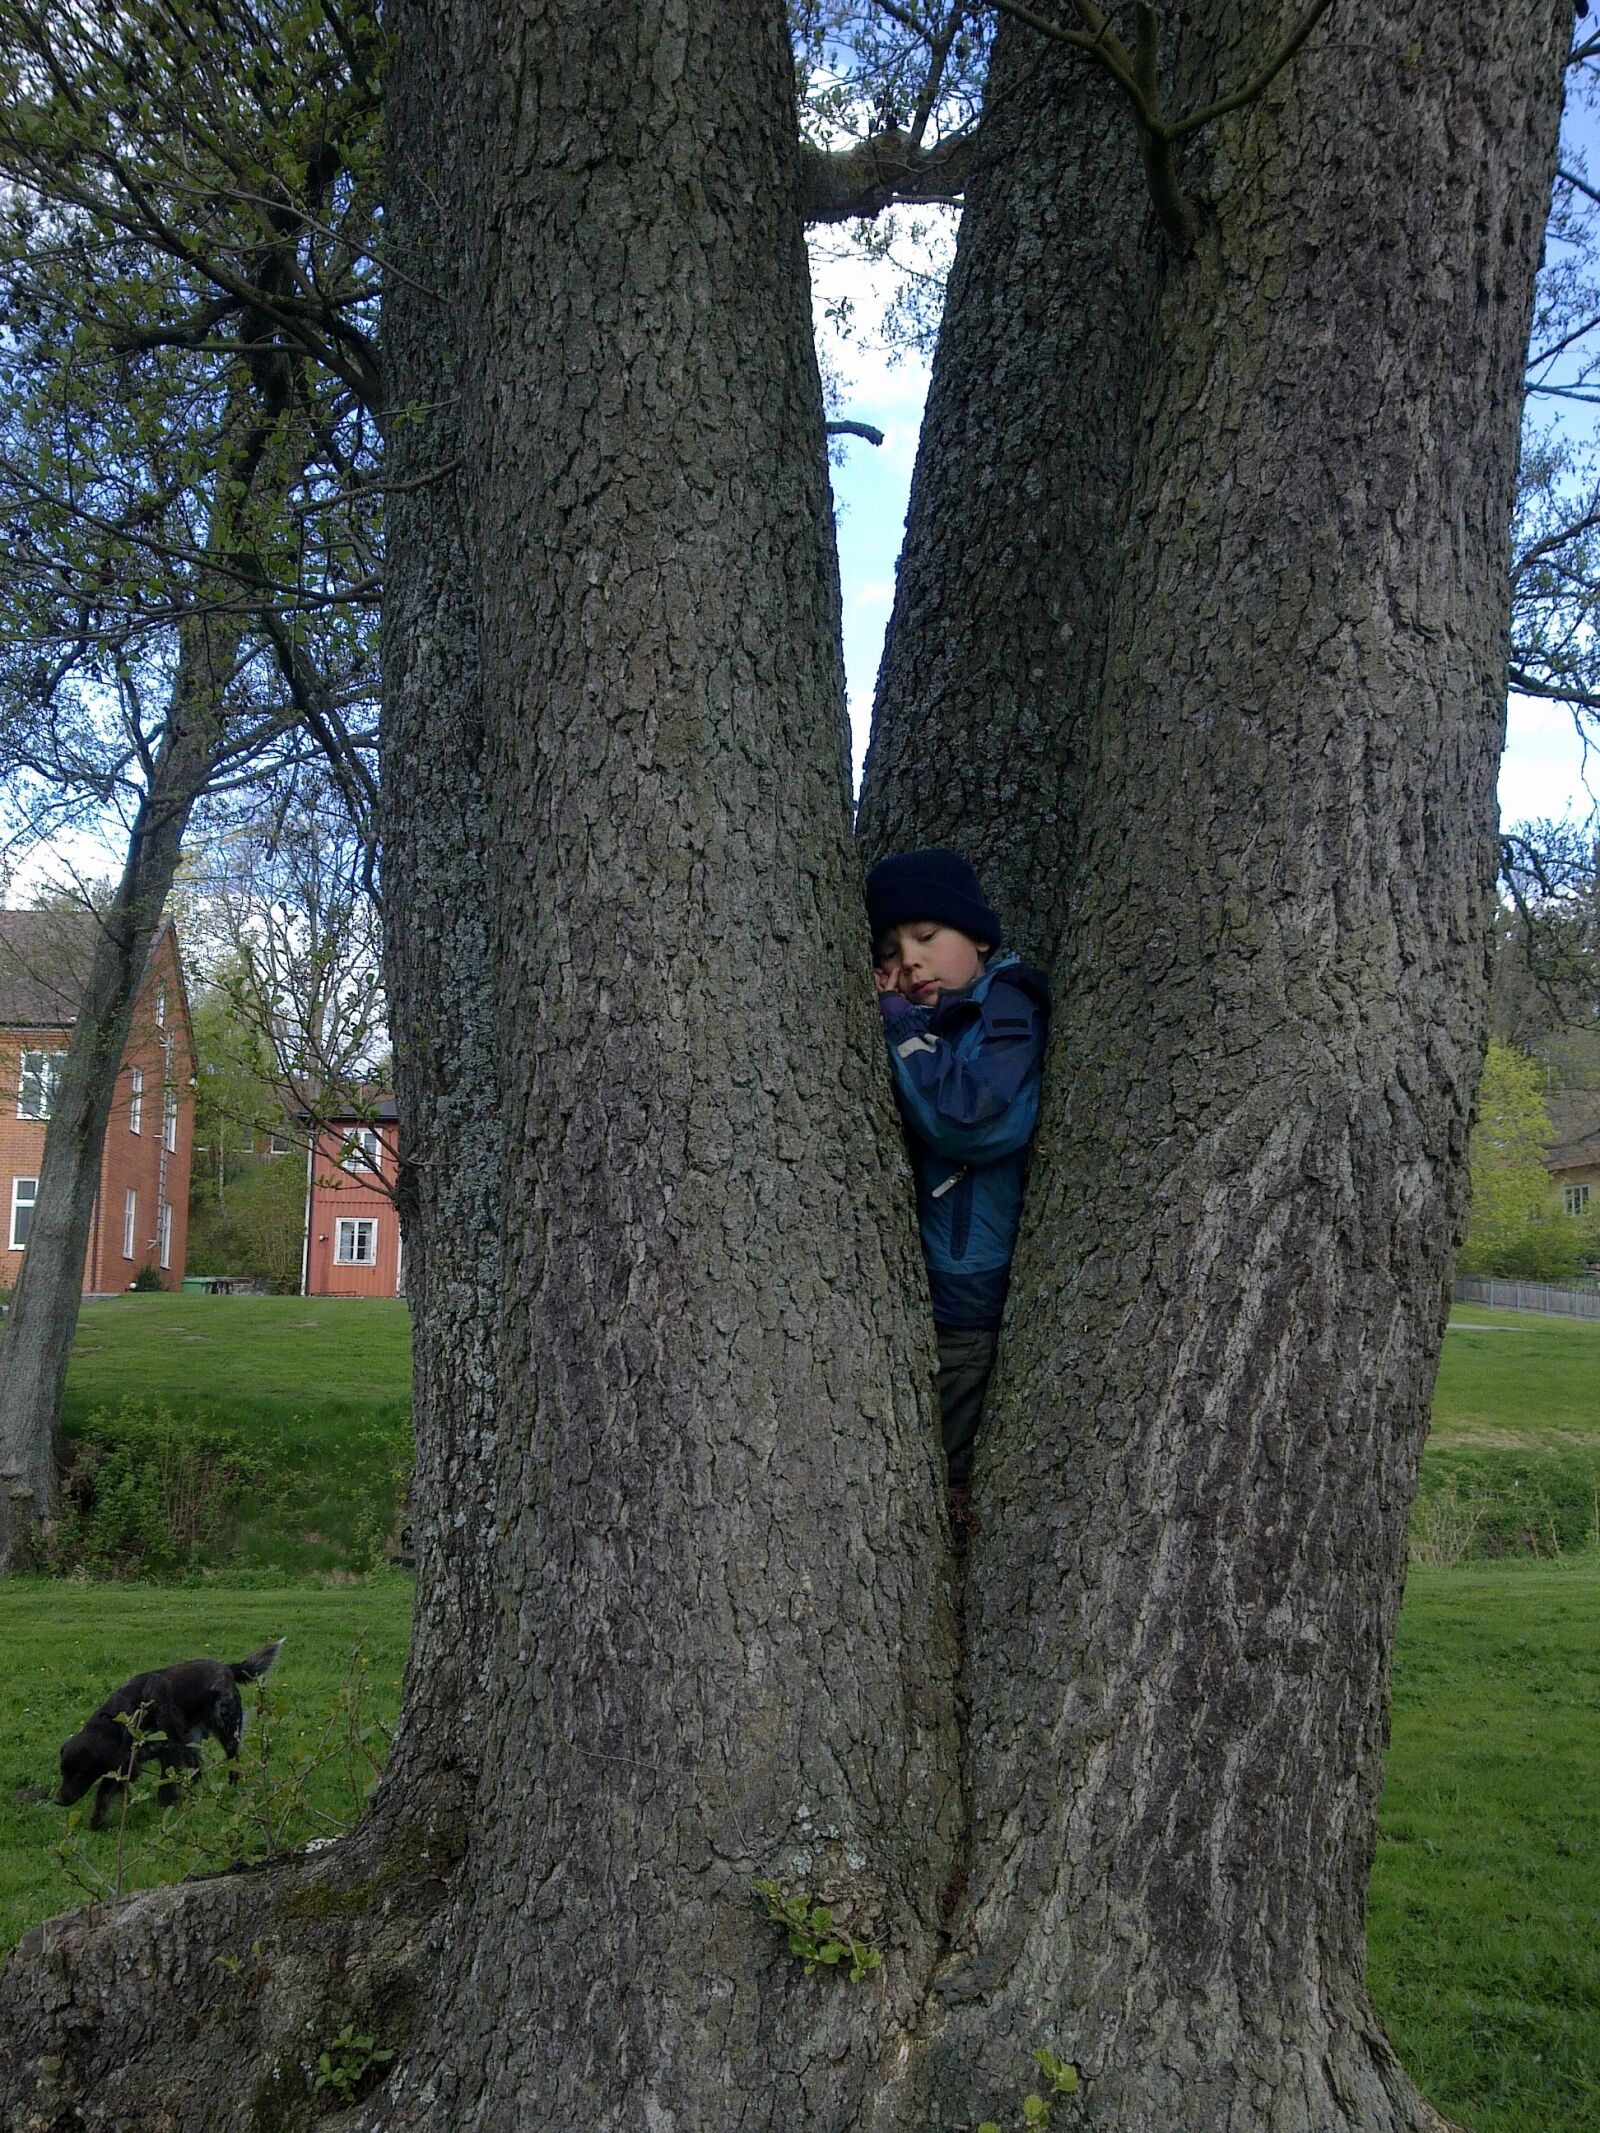 Nokia 6700s sample photo. Boy, climbs, tree photography